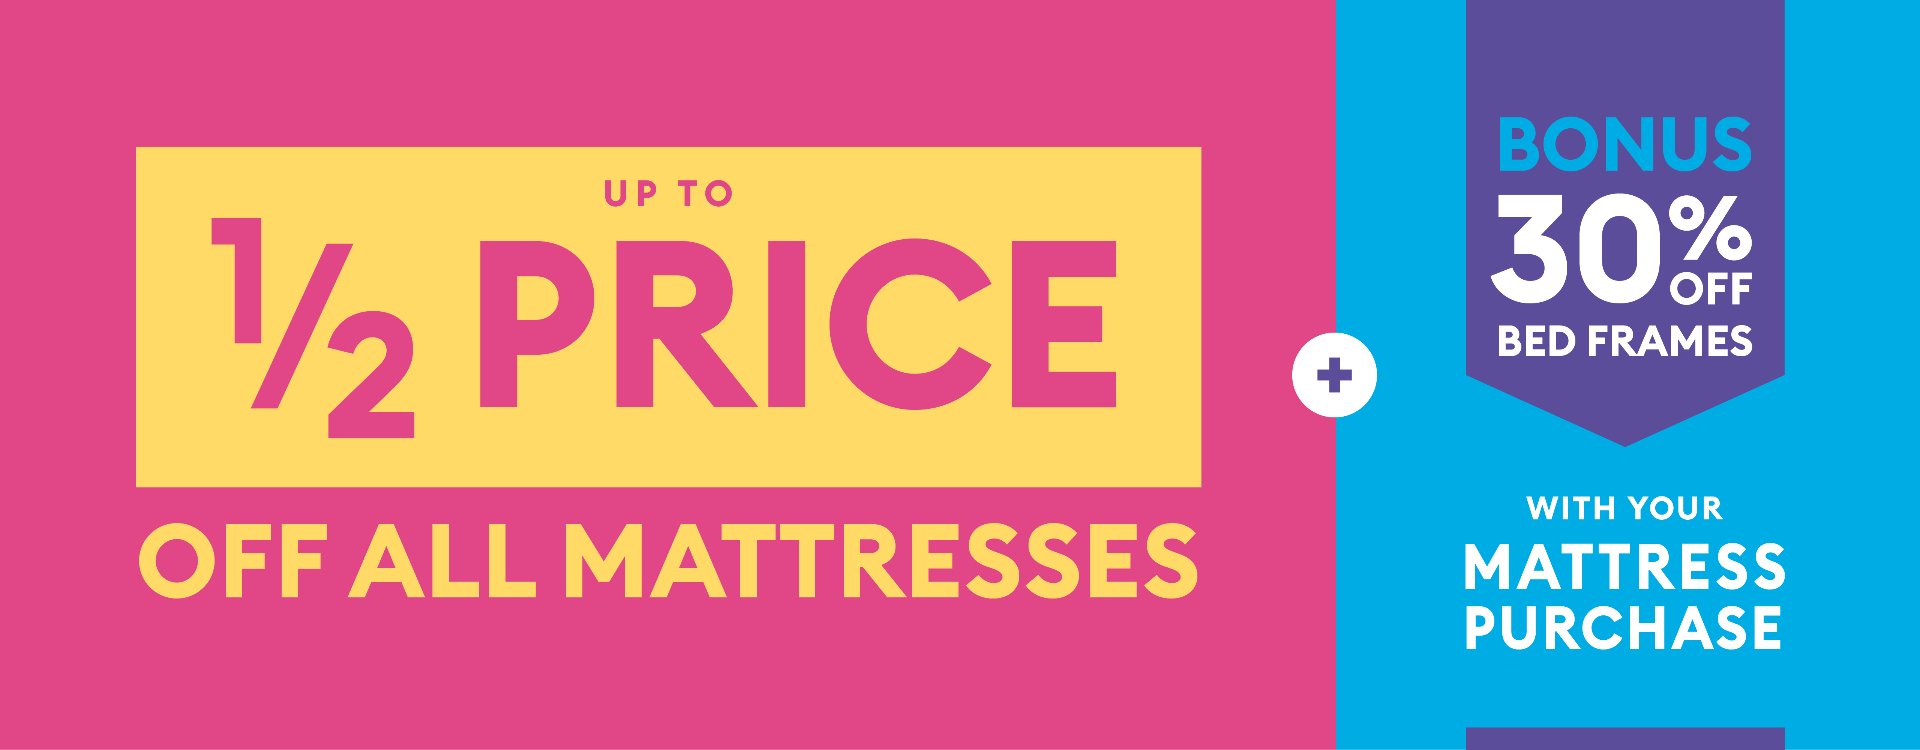 mattress sale statistics usa